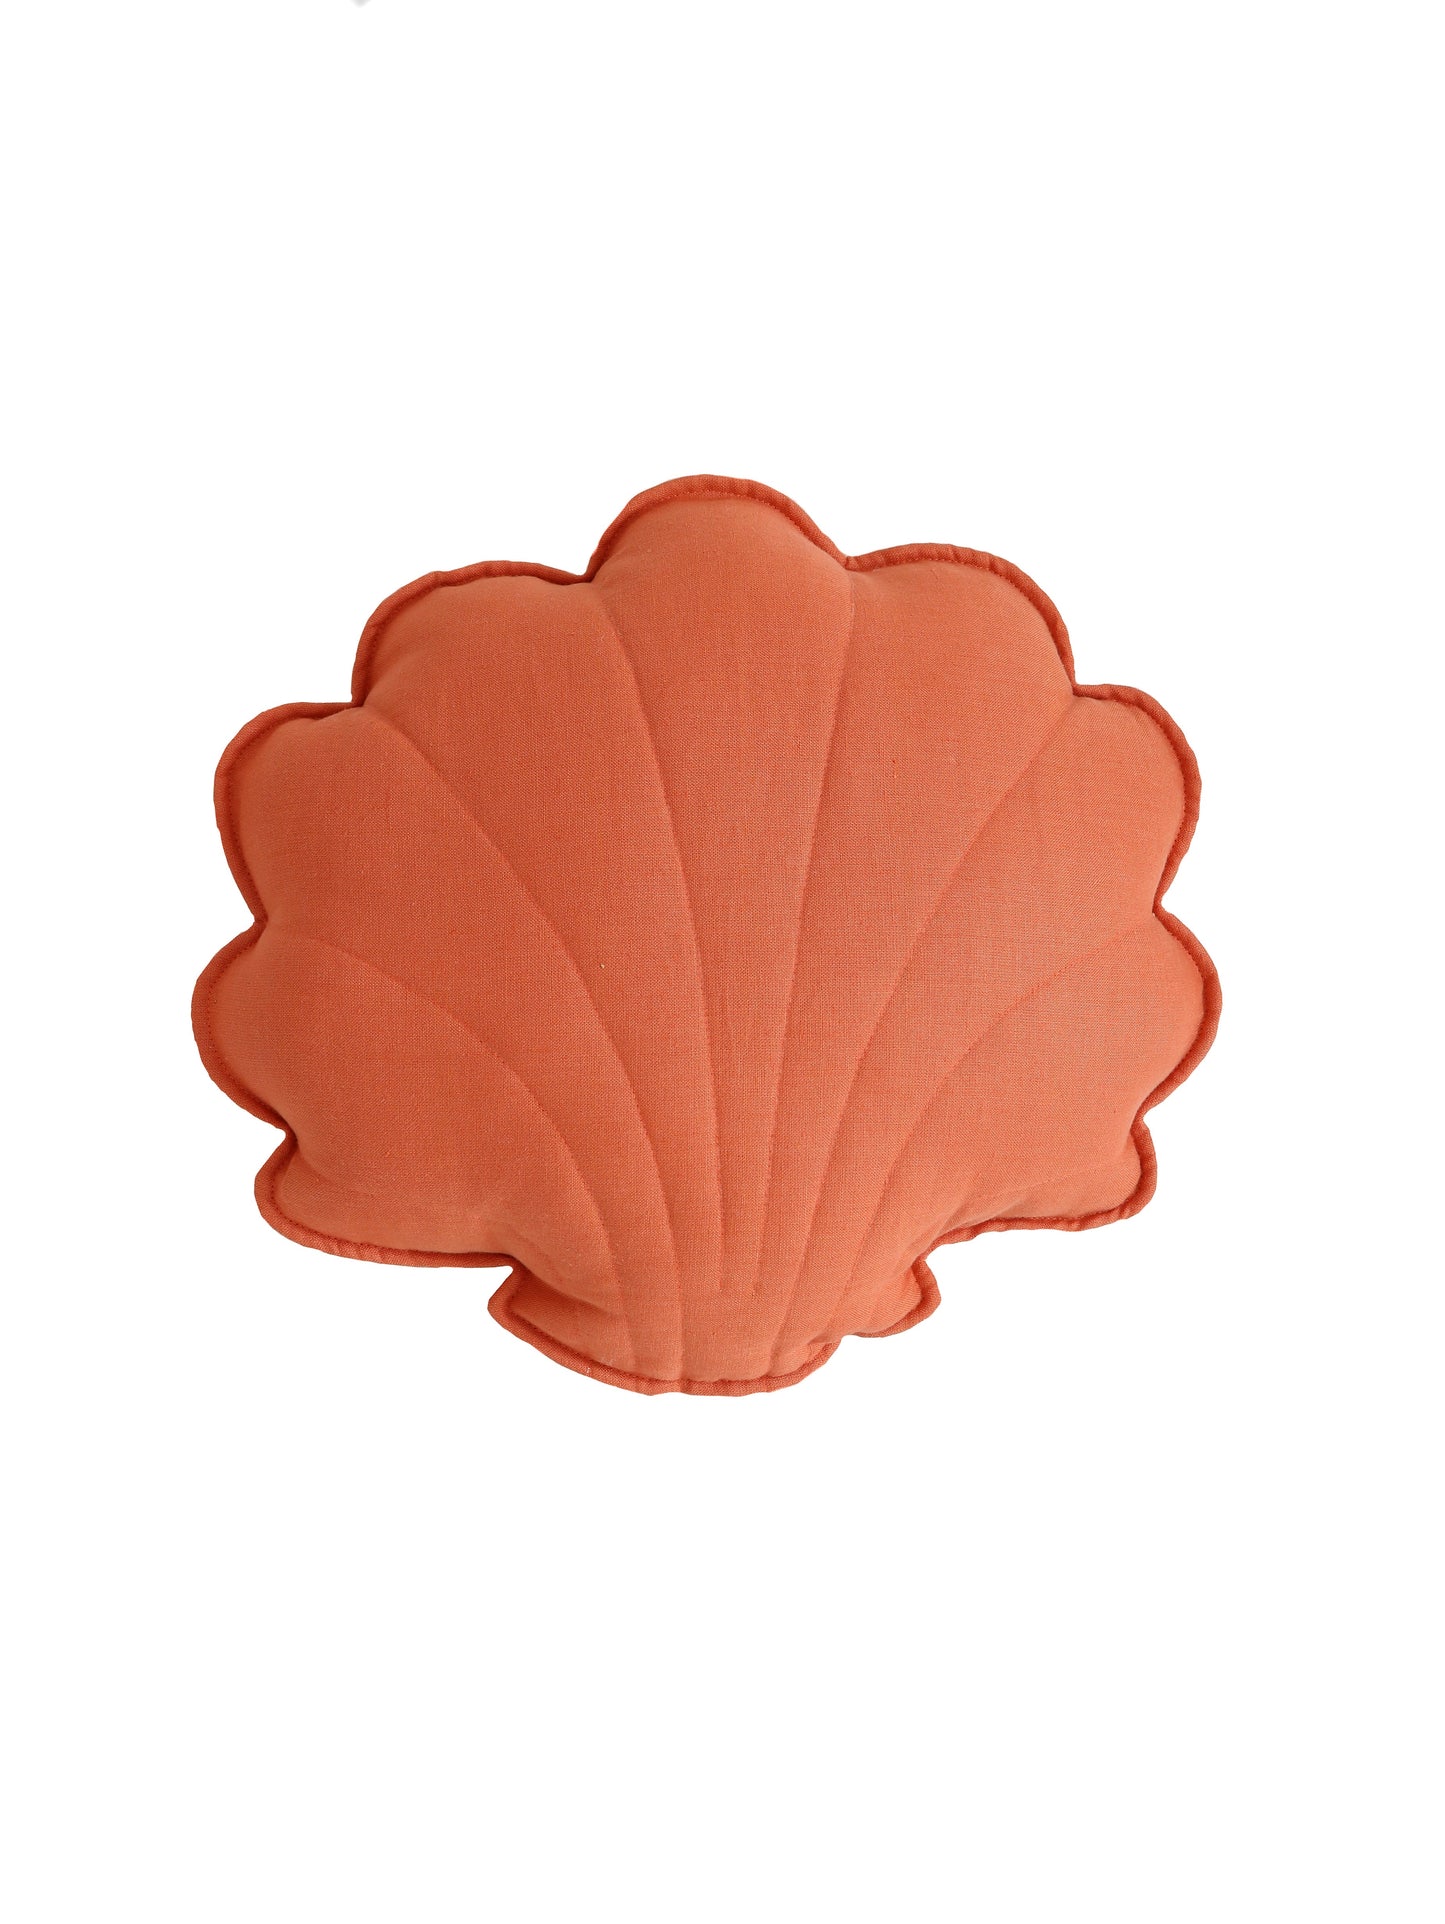 Linen “Papaya” Shell Pillow